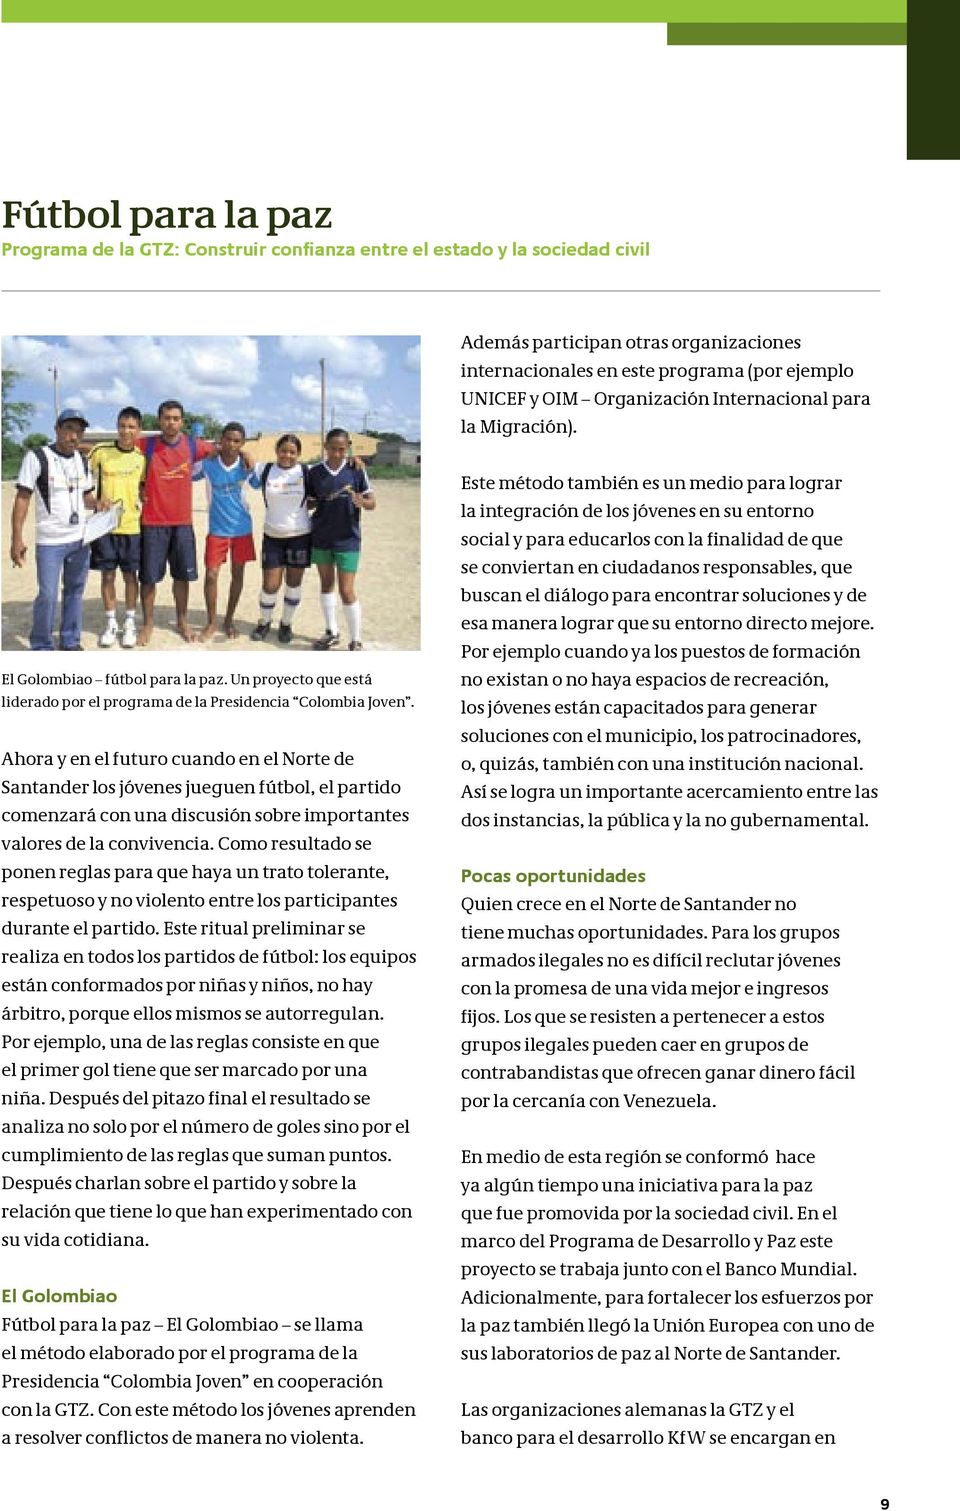 Ahora y en el futuro cuando en el Norte de Santander los jóvenes jueguen fútbol, el partido comenzará con una discusión sobre importantes valores de la convivencia.